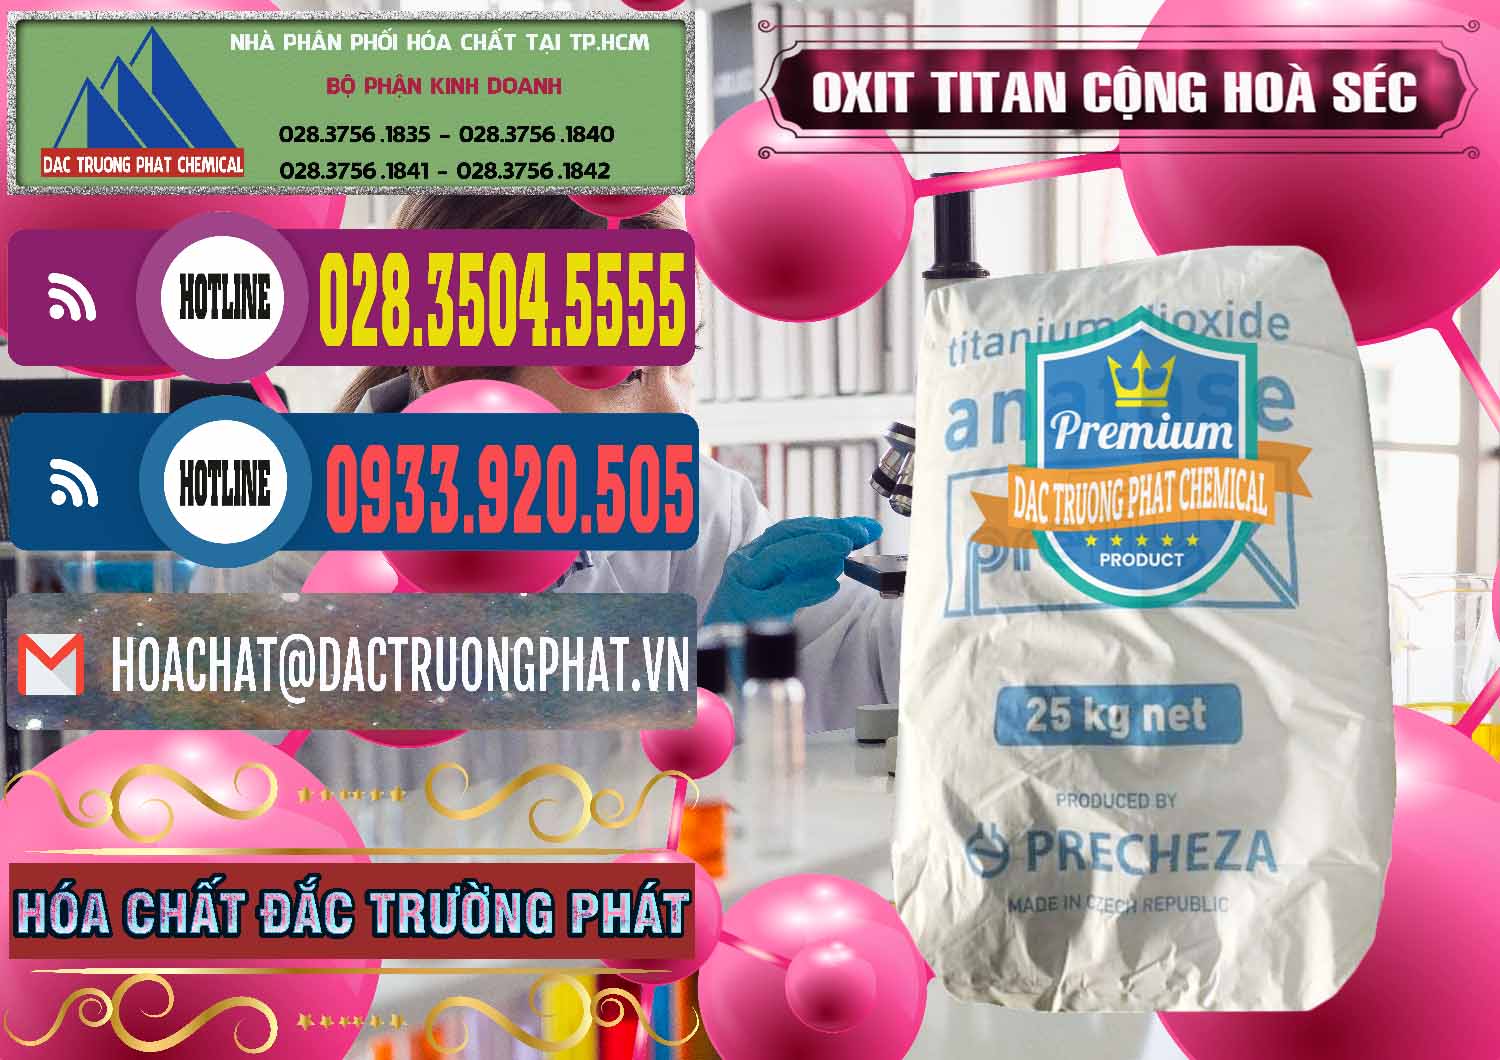 Nơi phân phối và bán Oxit Titan KA100 – Tio2 Cộng Hòa Séc Czech Republic - 0407 - Công ty kinh doanh - cung cấp hóa chất tại TP.HCM - muabanhoachat.com.vn